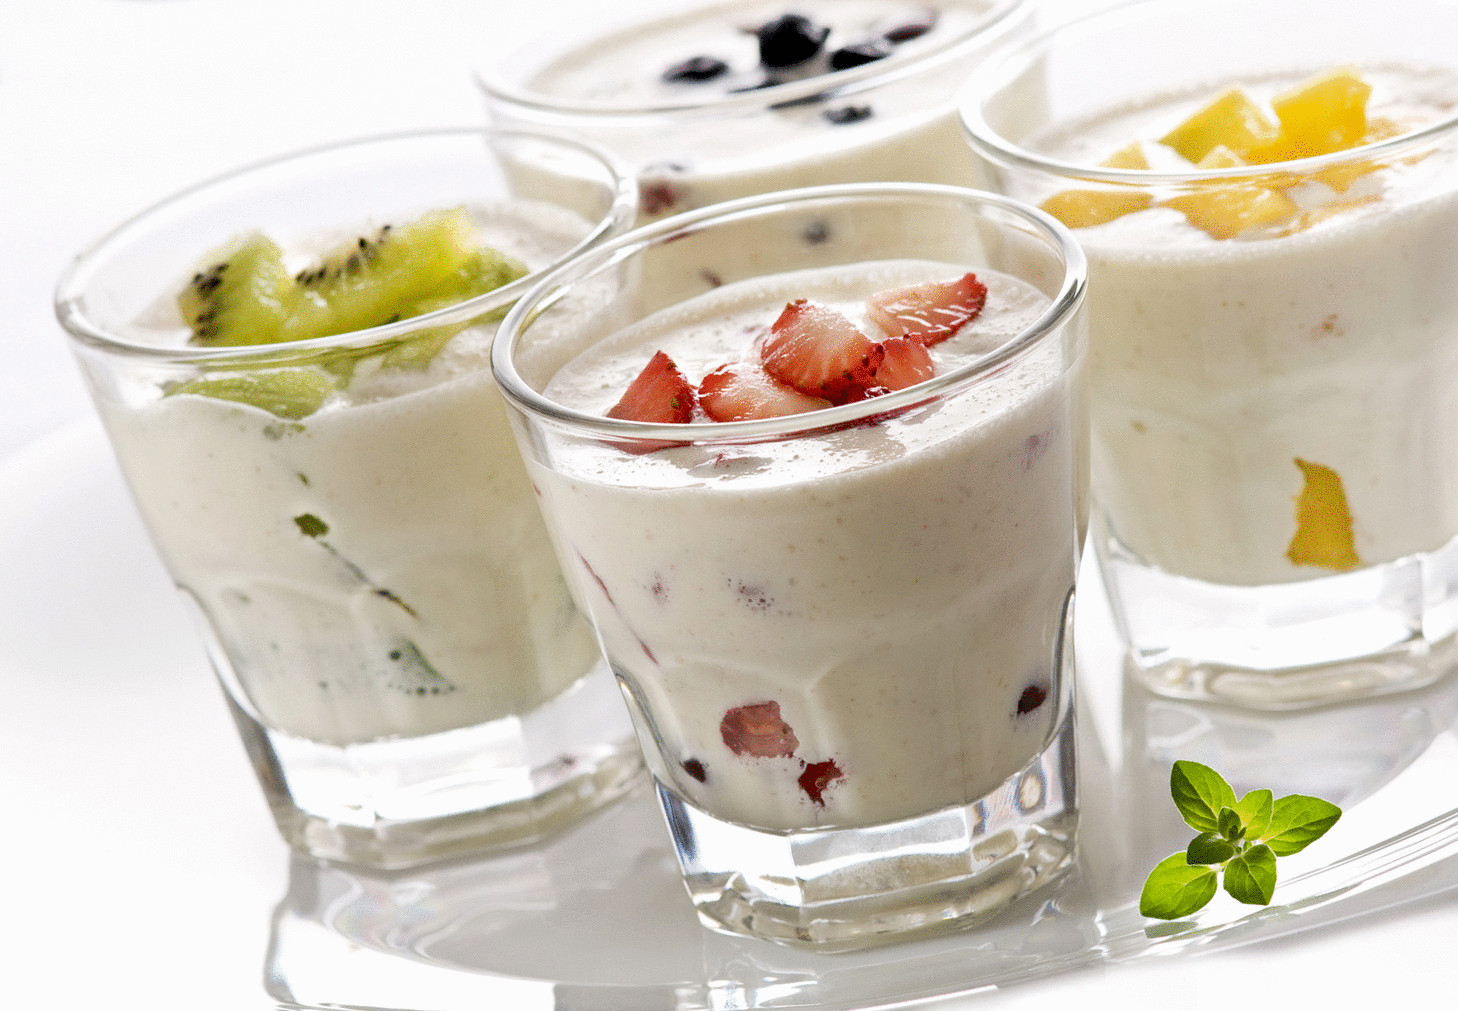 Питьевой йогурт - замечательный летний обед